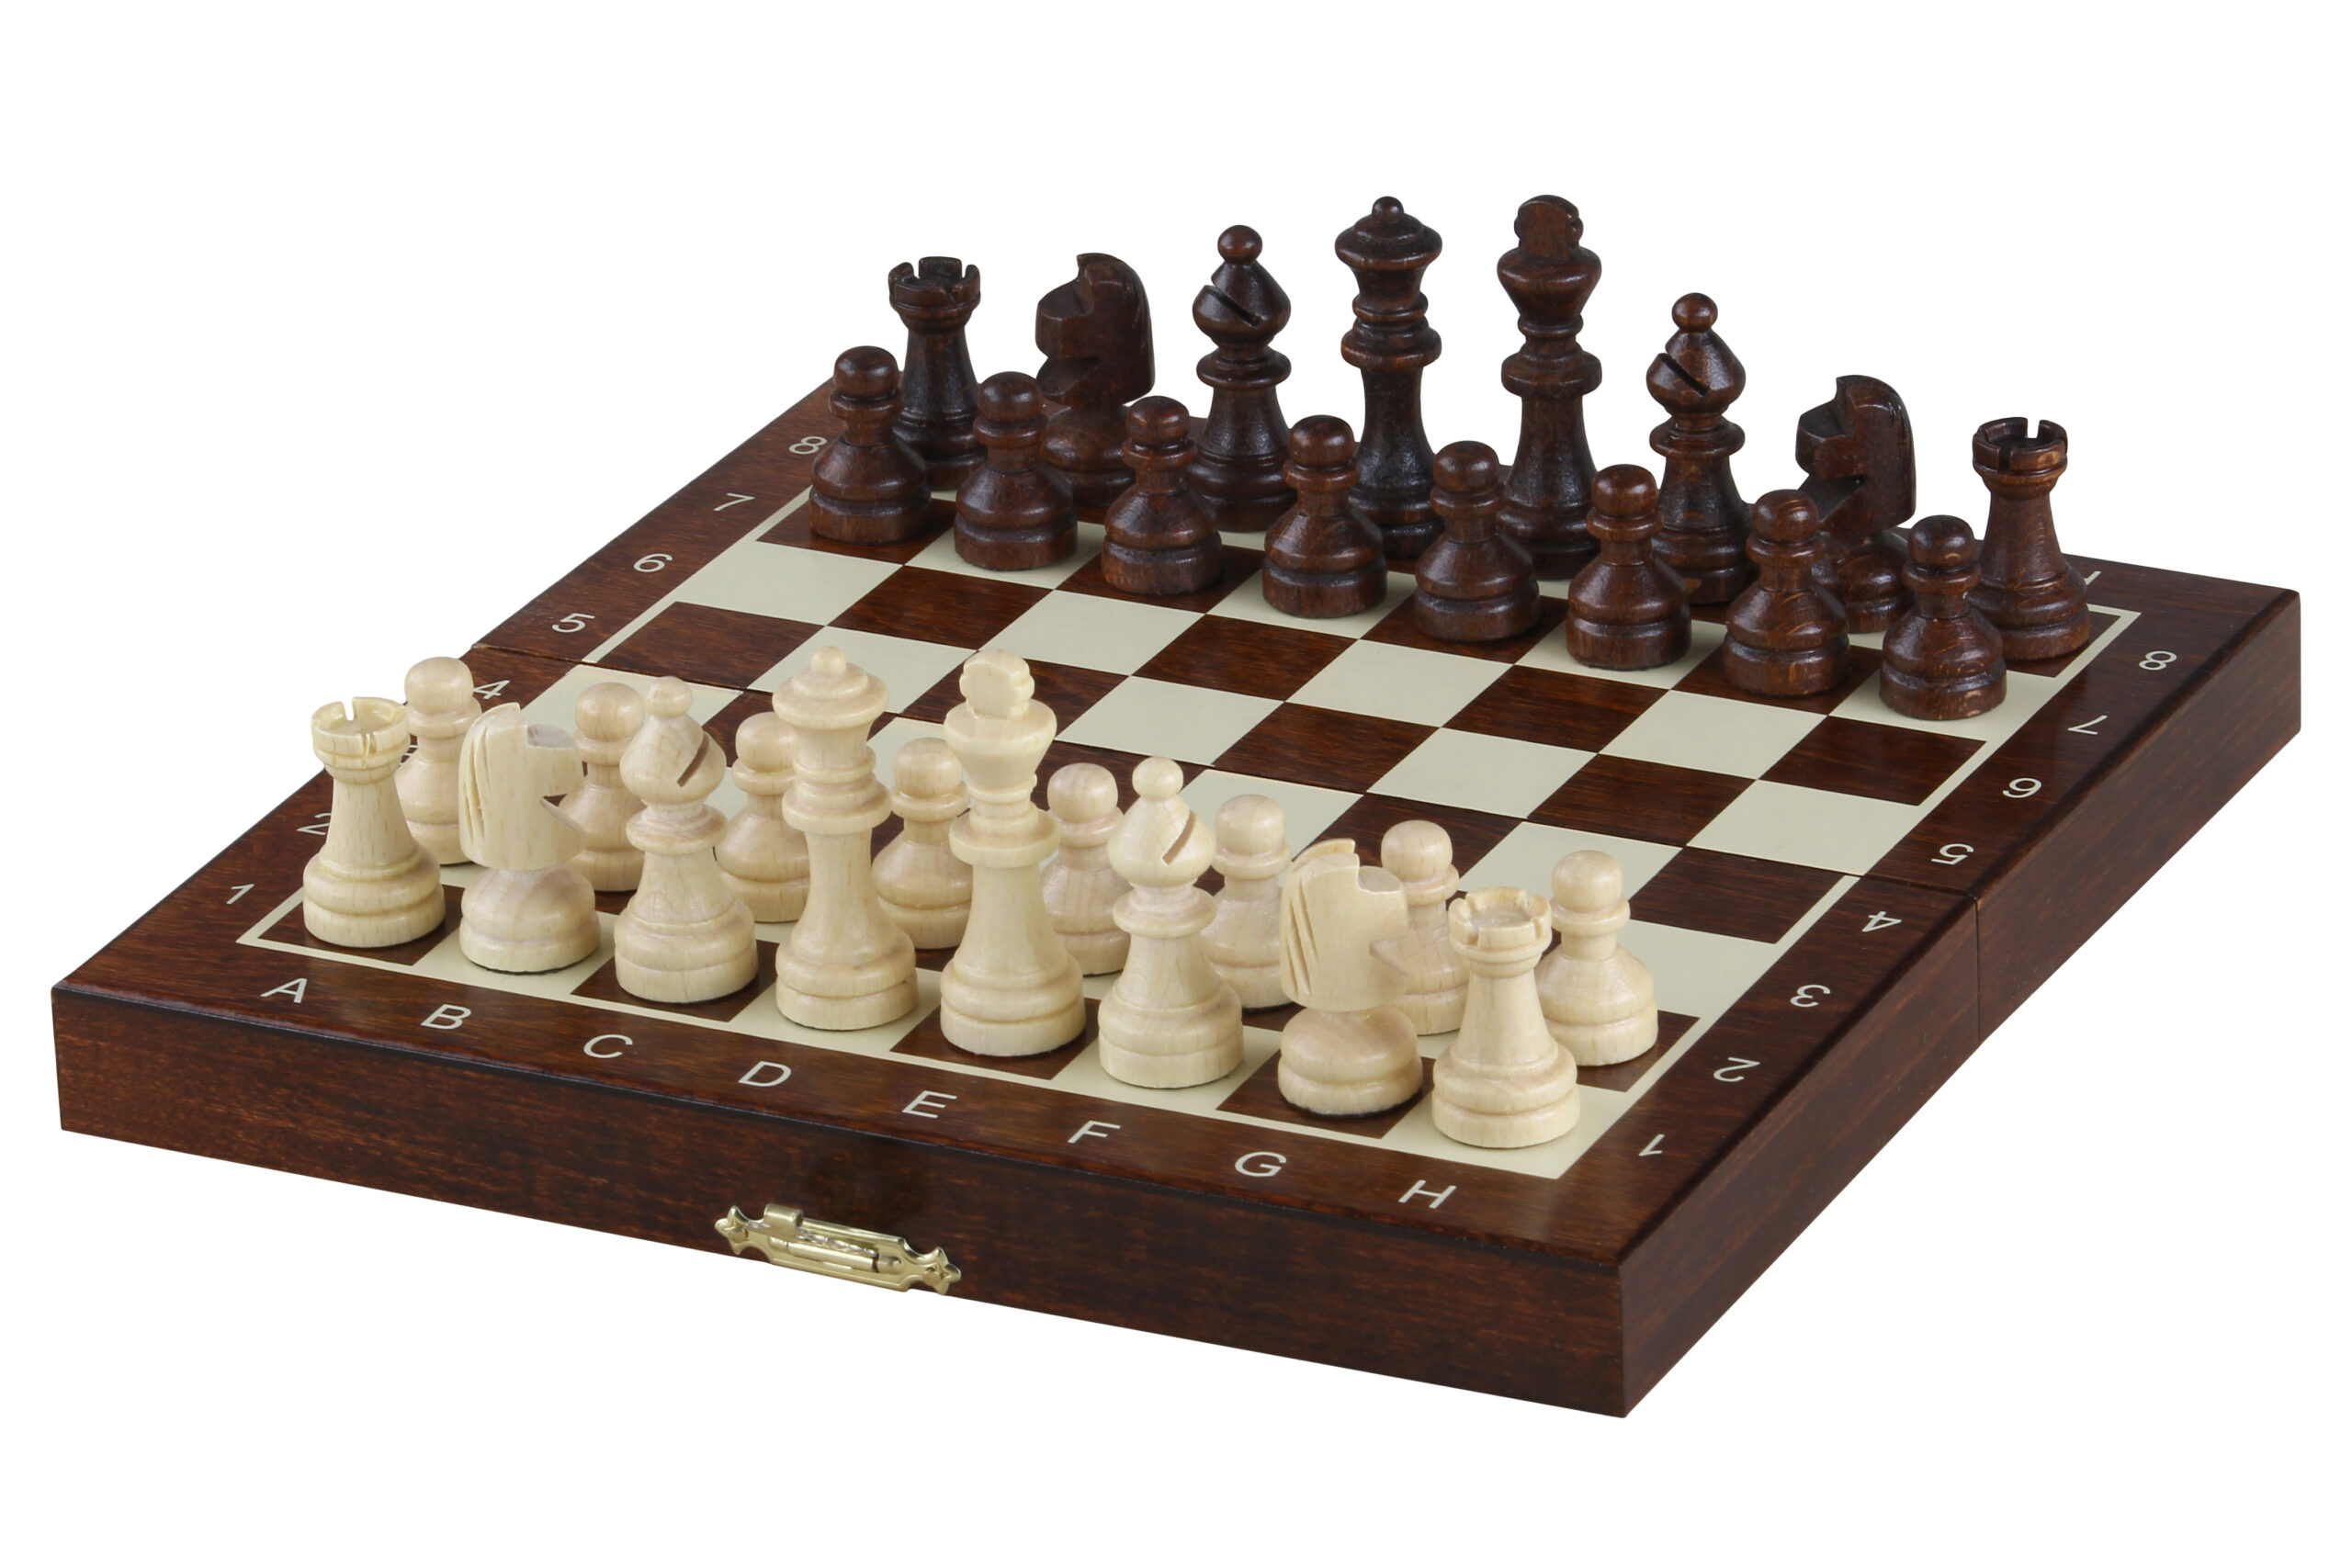 Échiquier électronique - Avec Pièces d'échecs magnétiques